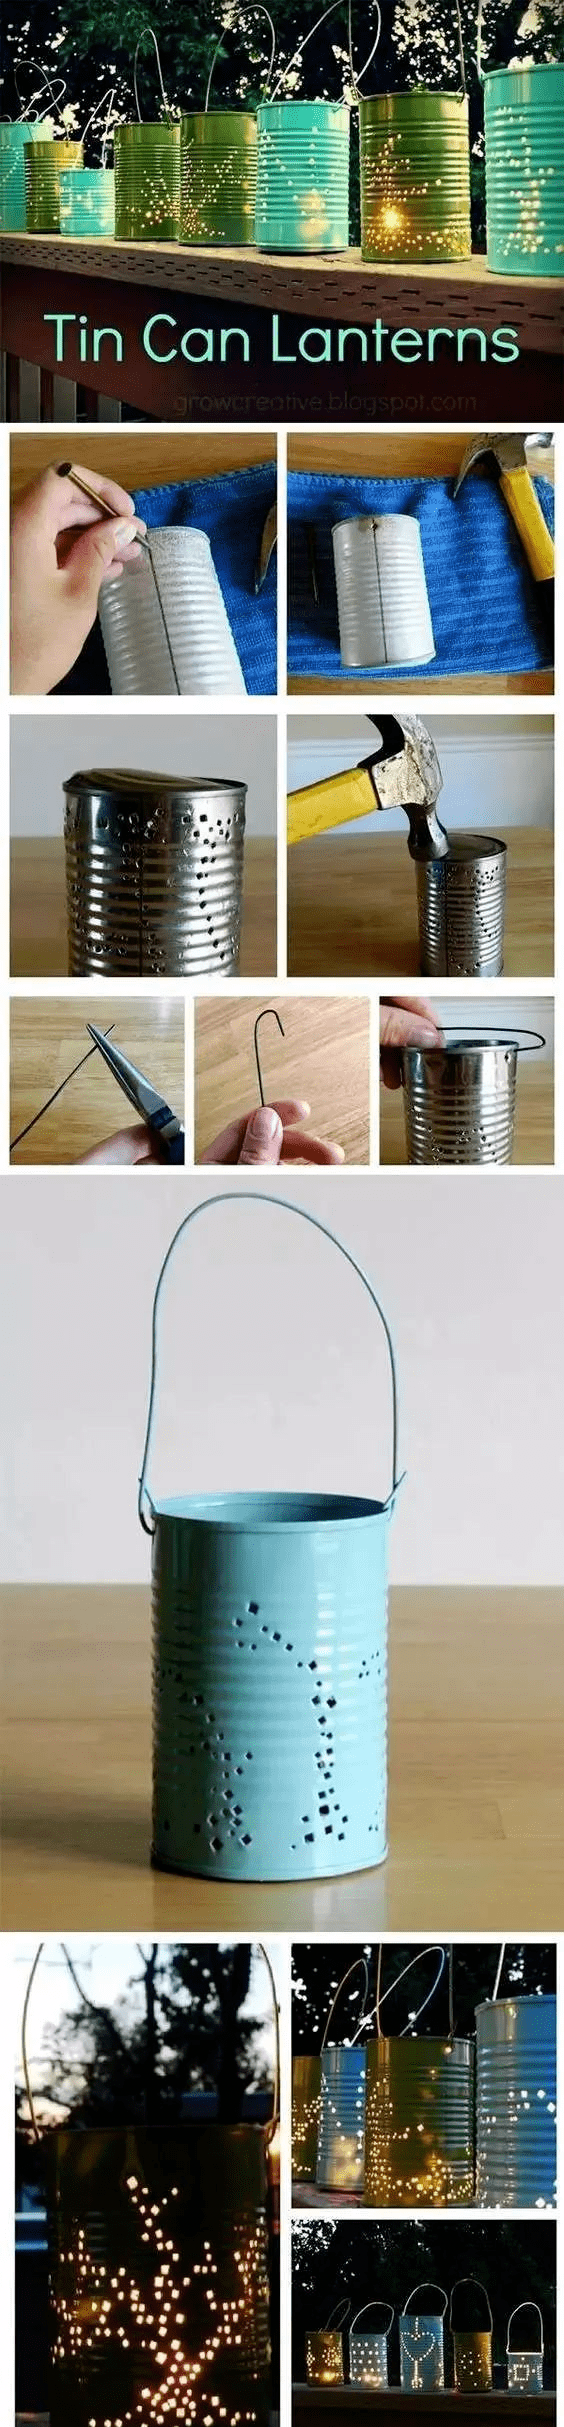 铁罐的制作过程图片